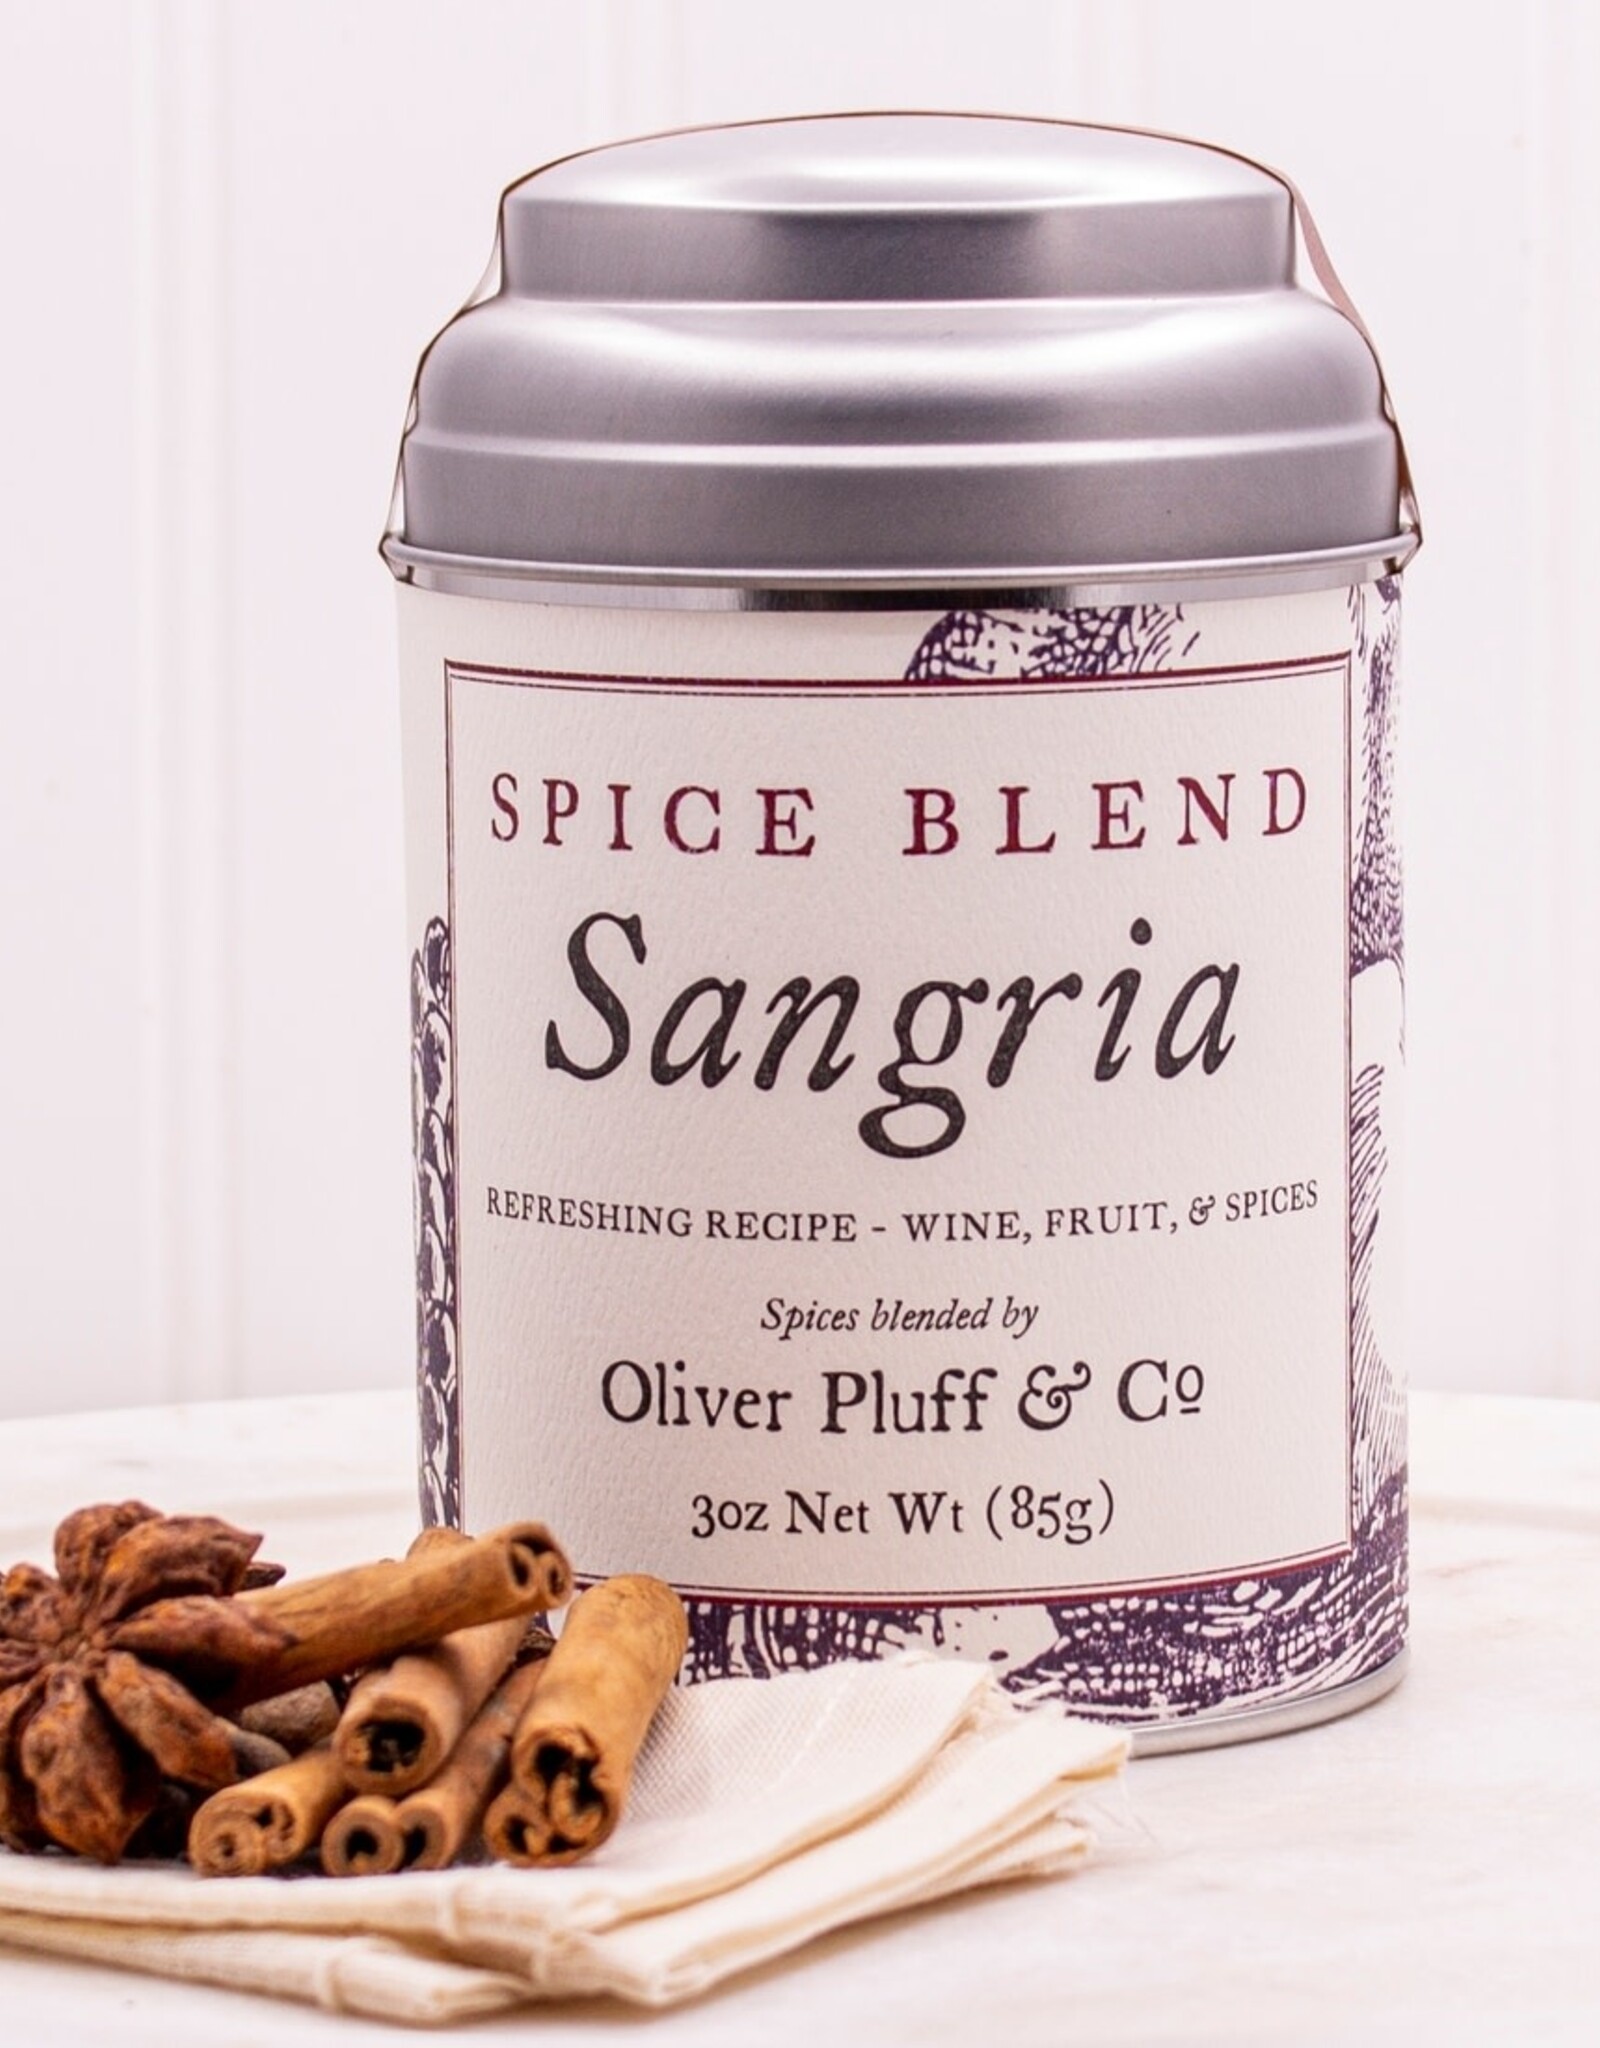 Oliver Pluff & Co Oliver Pluss & Co Sangria Spice Blend